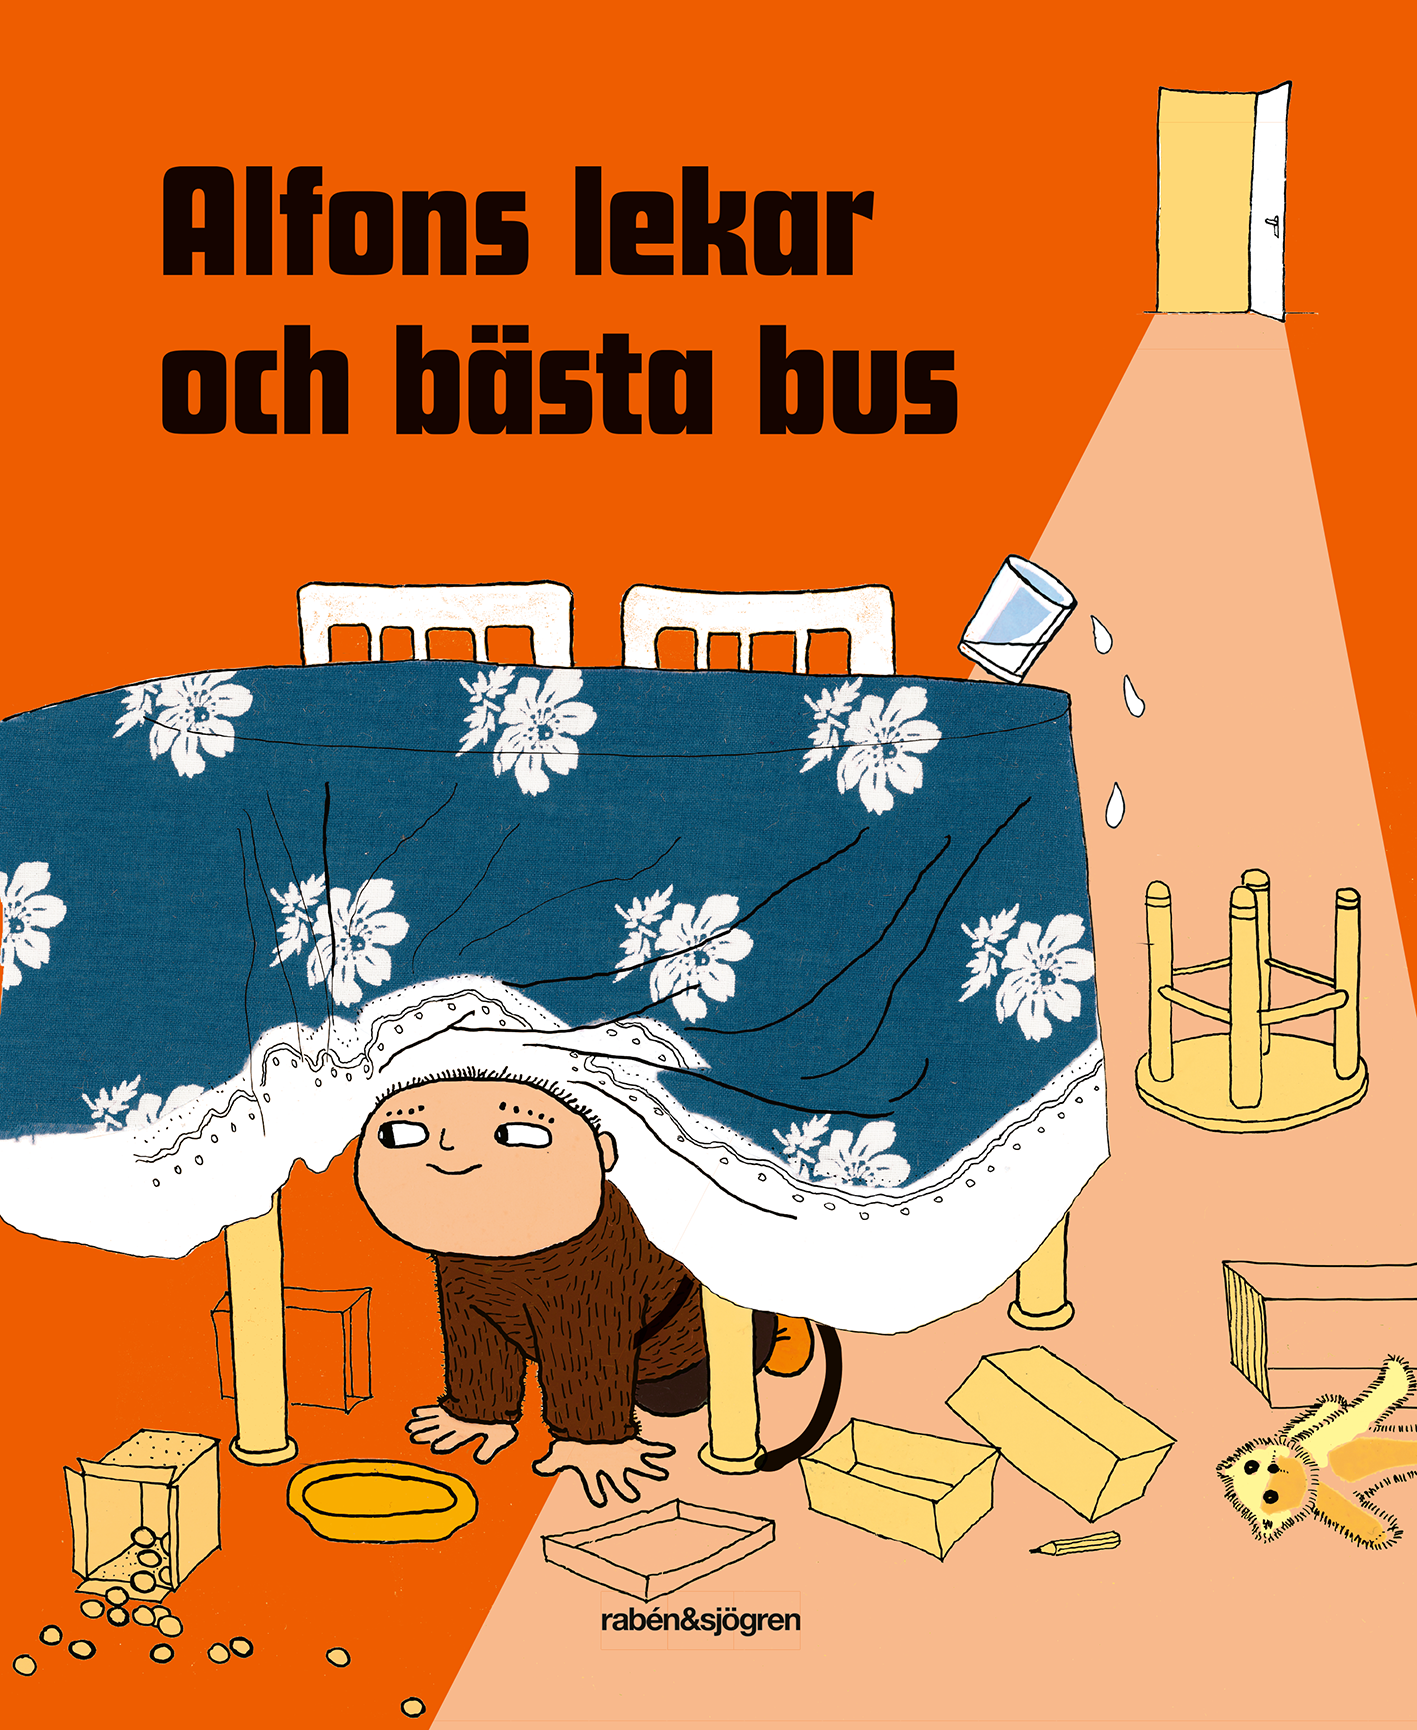 Alfons lekar och bästa bus